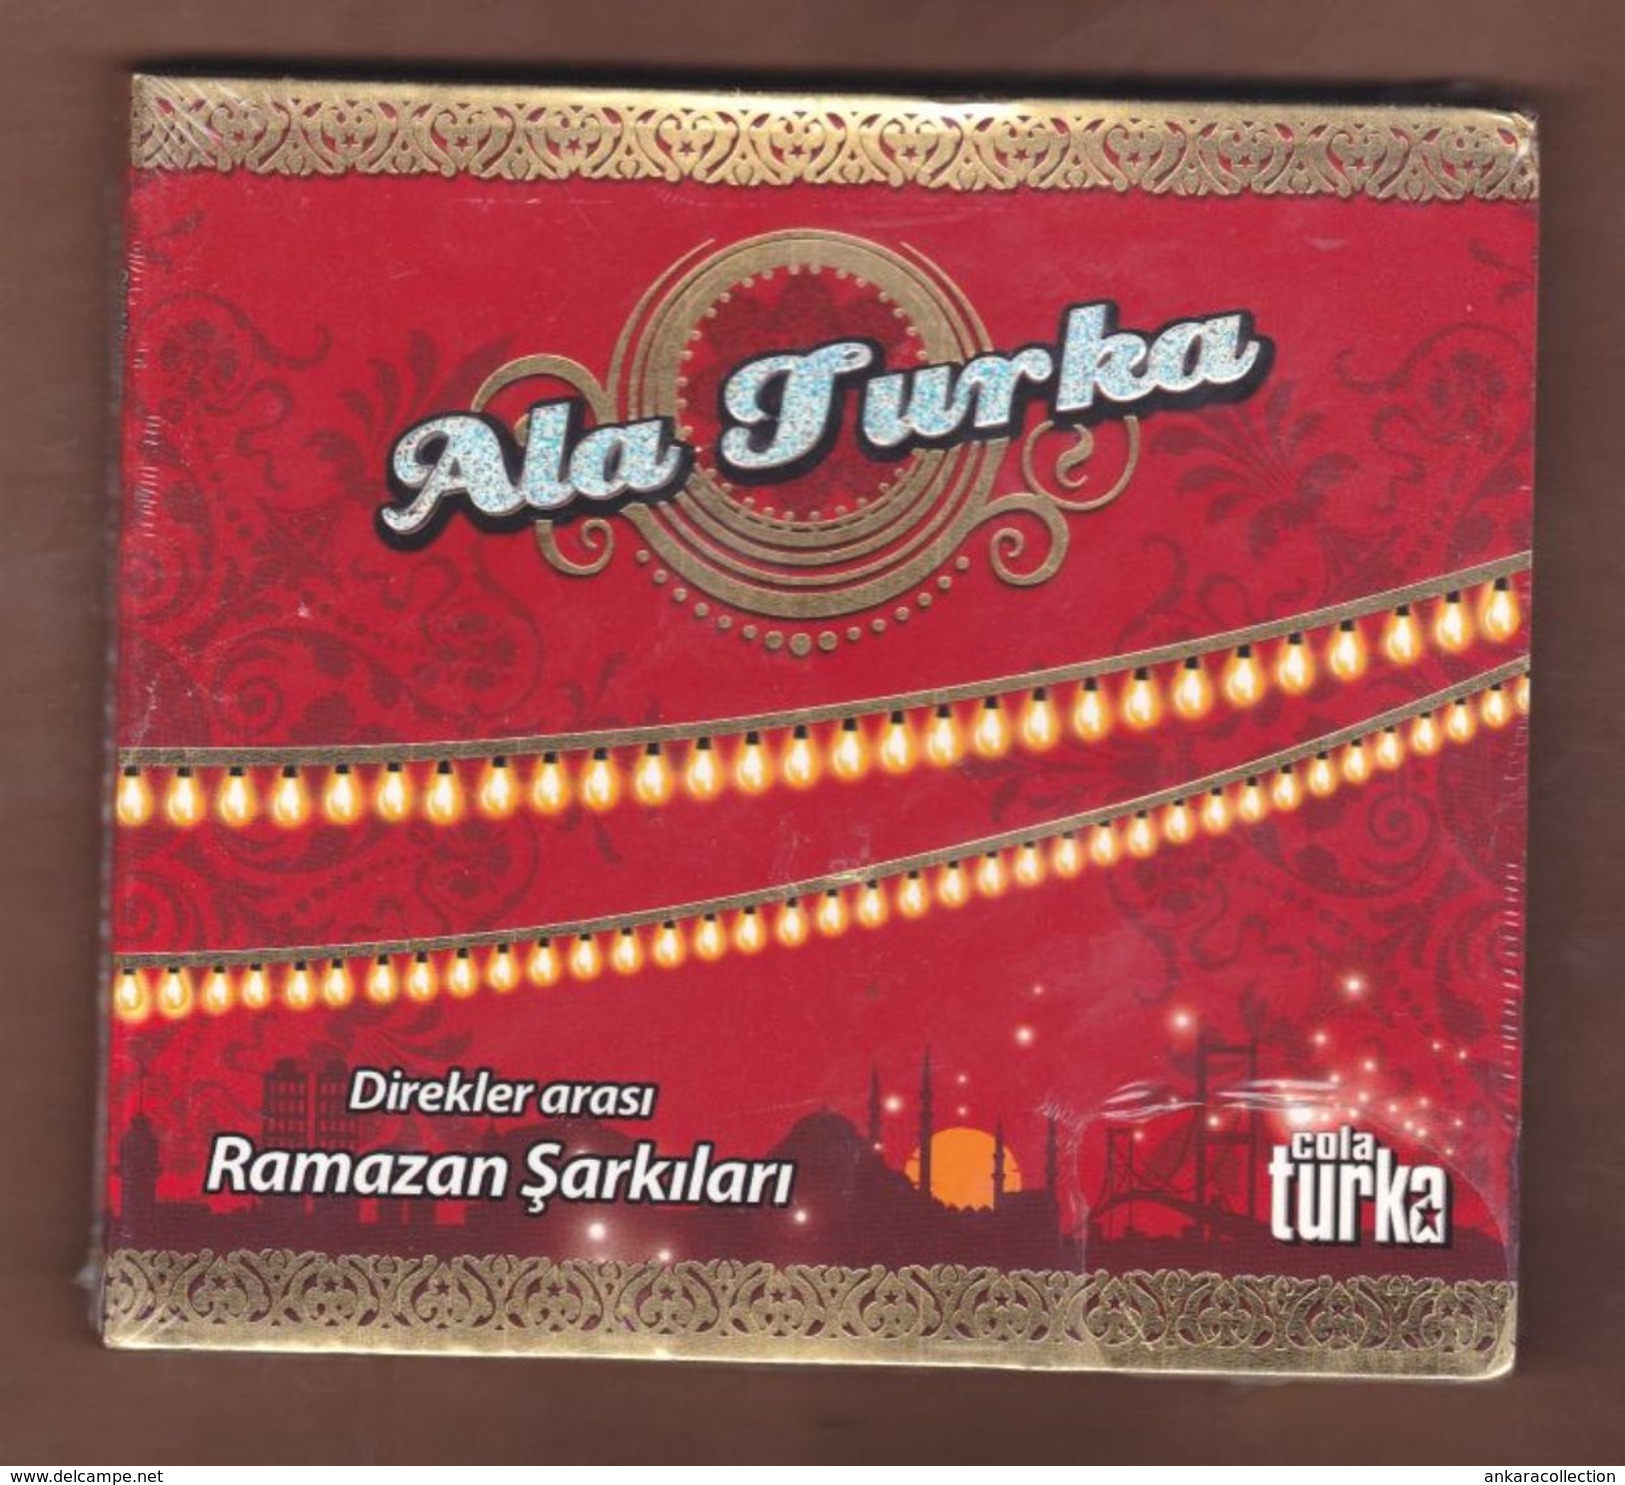 AC - Cola Turka Ala Turka Direkler Arası Ramazan şarkıları BRAND NEW TURKISH MUSIC CD - World Music